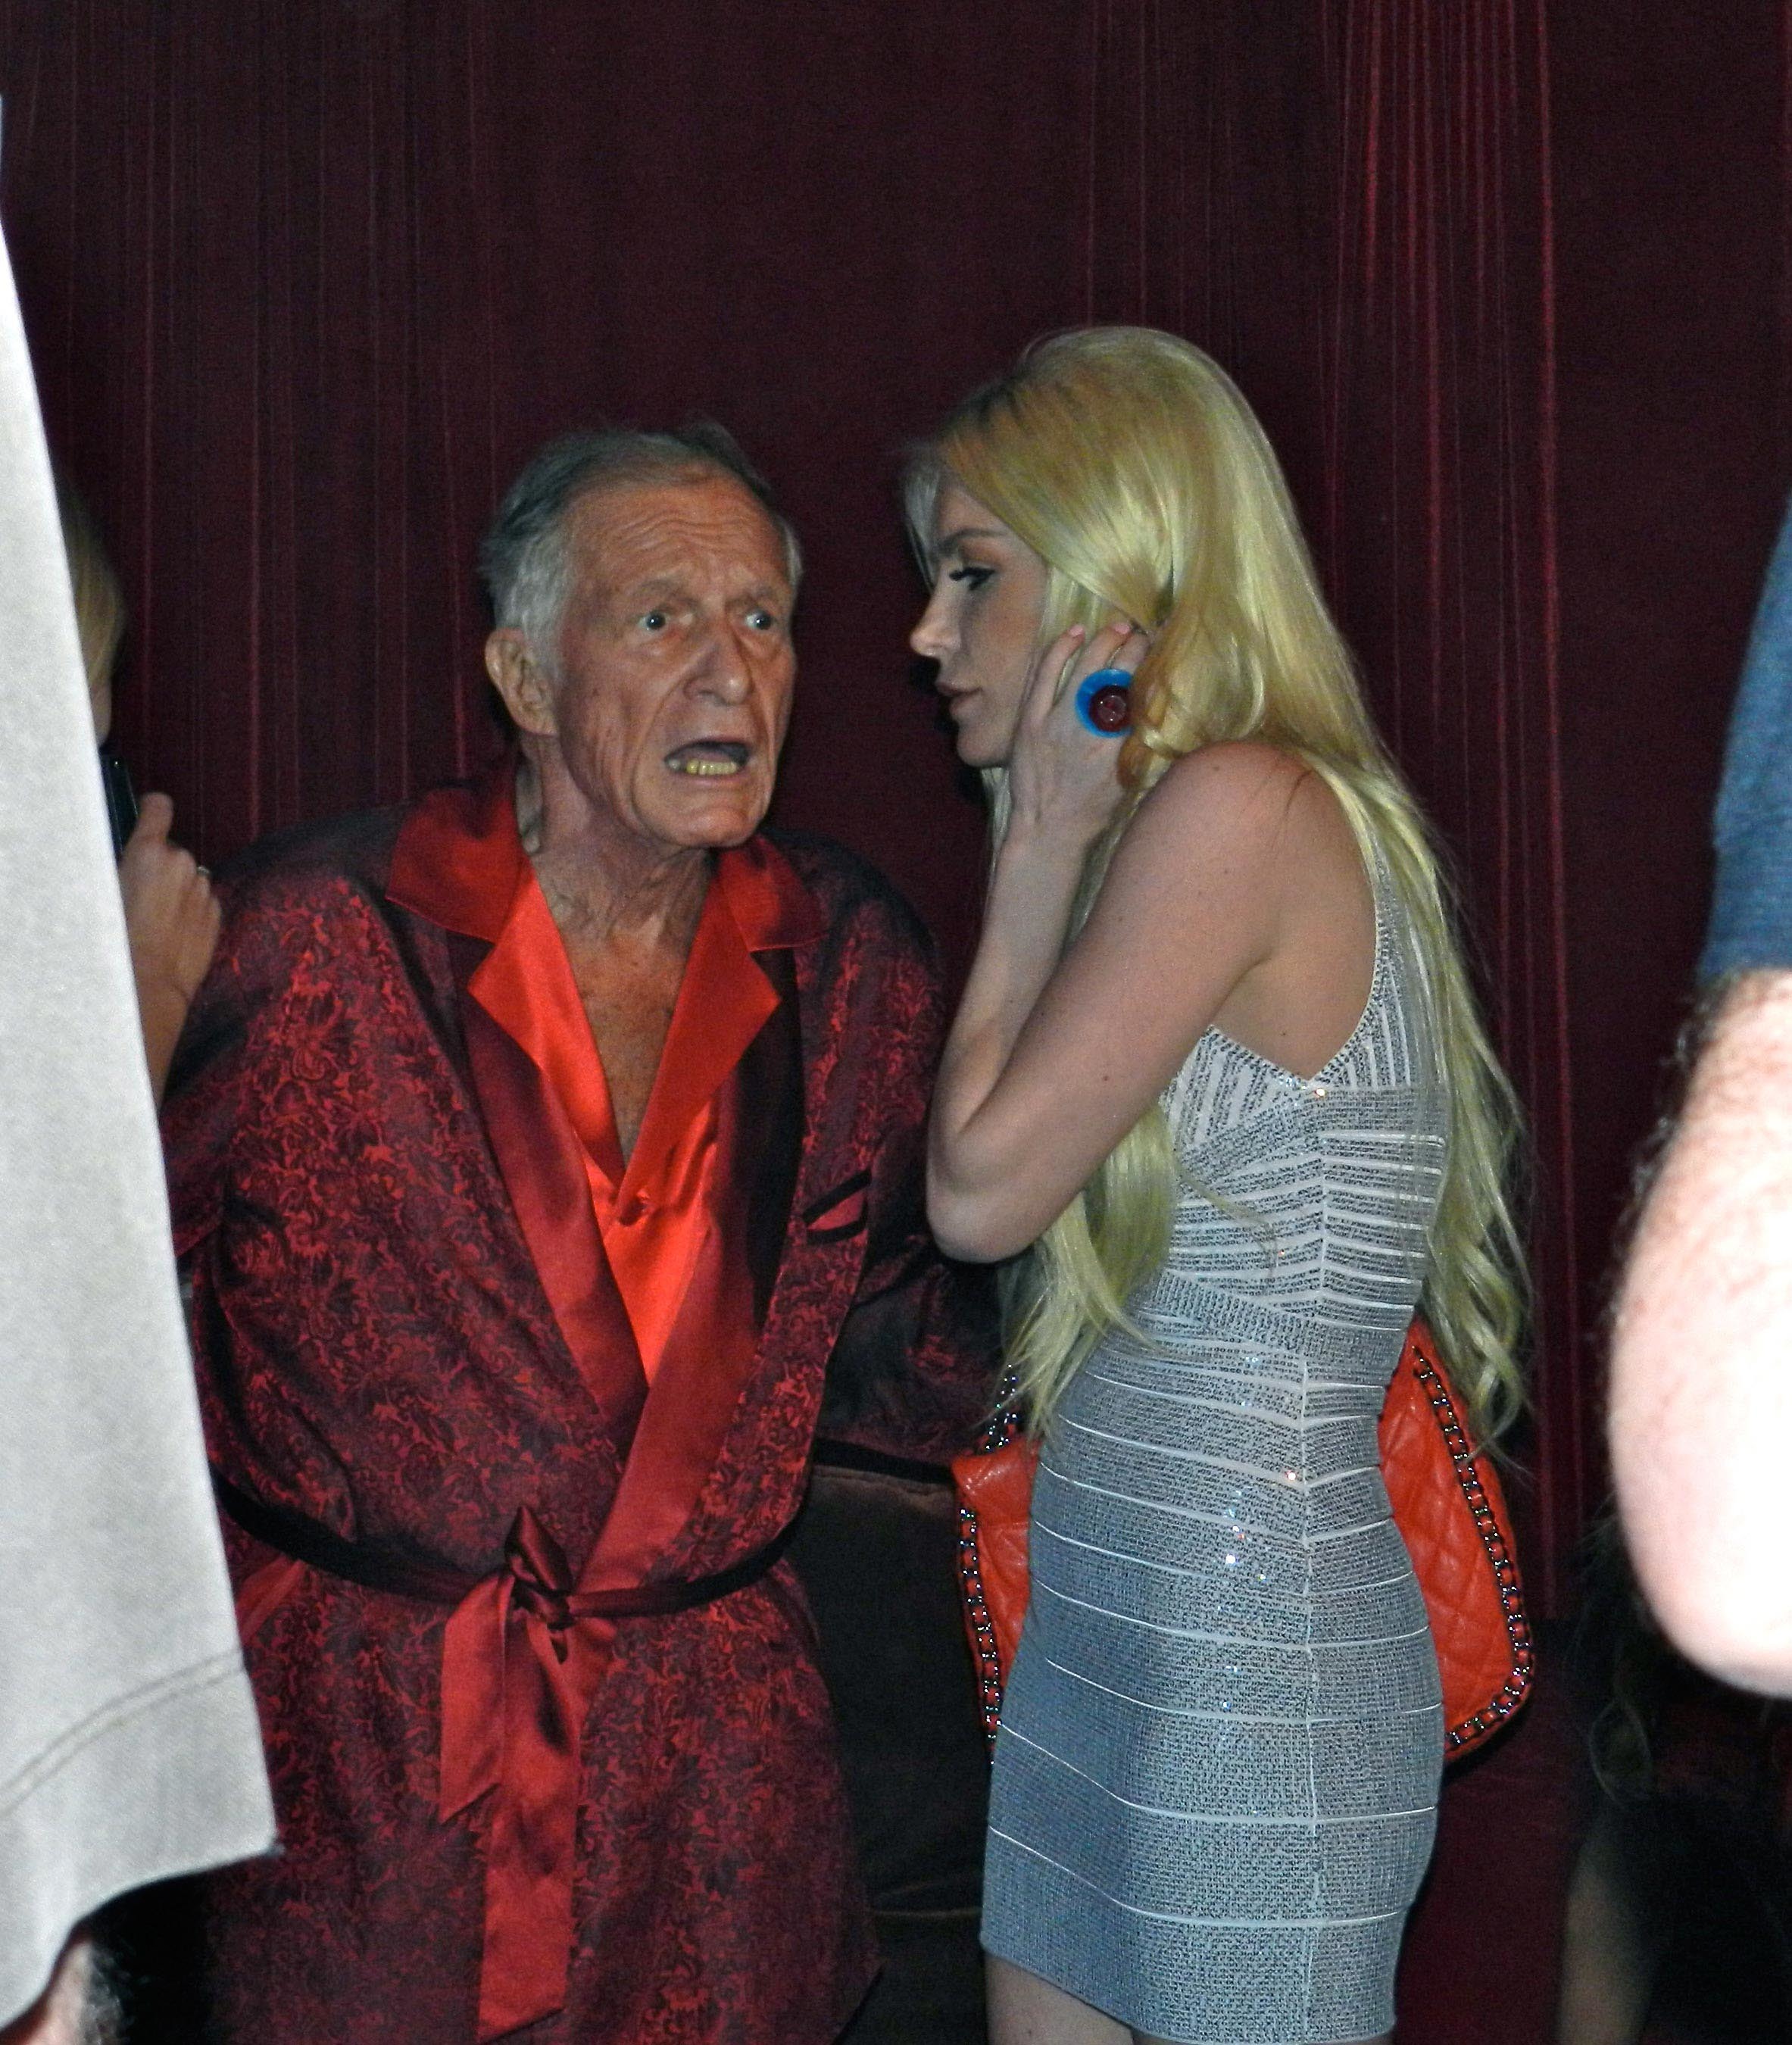 Hugh Hefner y Crystal Harris, en una fiesta de la mansin Playboy en 2012.